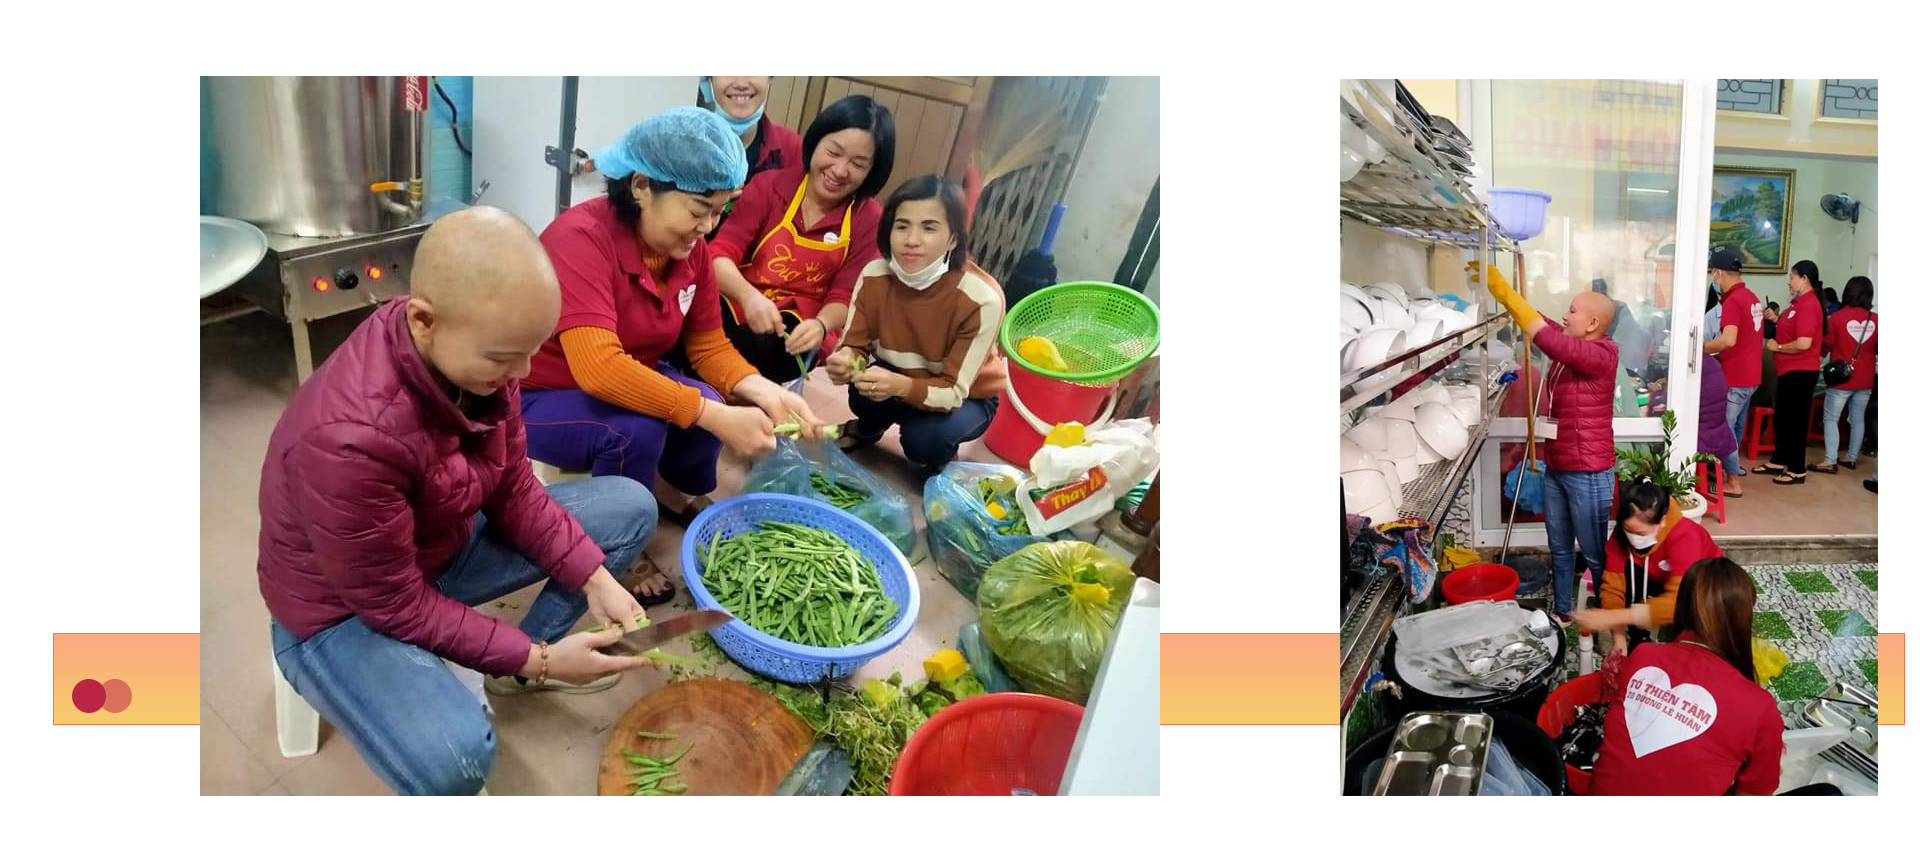 Chị Nguyễn Thị Hiền - bệnh nhân ung thư, tình nguyện góp chút sức lực của mình phụ giúp quán cơm.